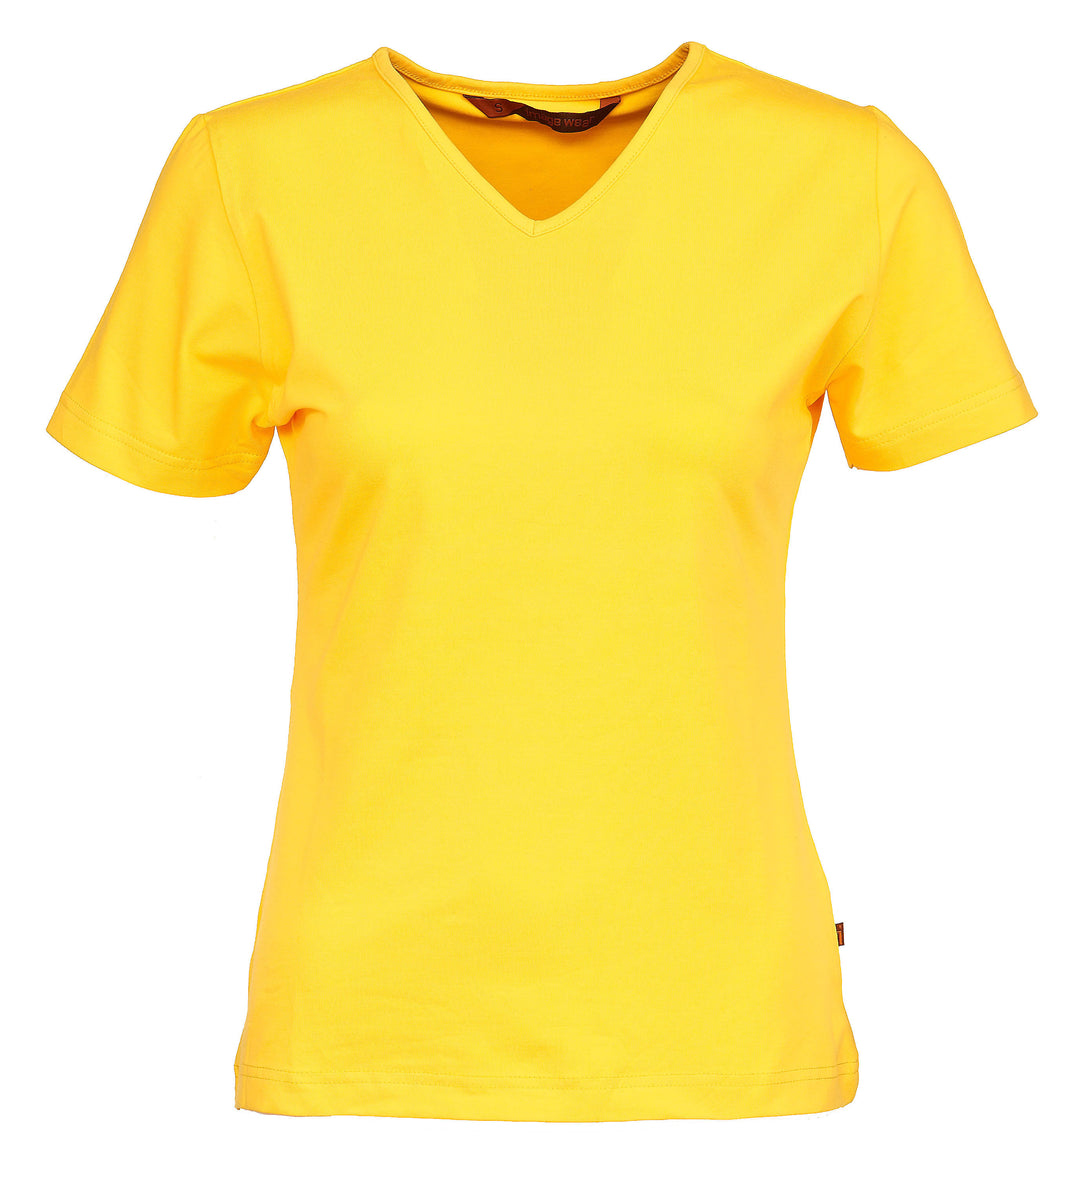 Naisten lyhythihainen kirkkaankeltainen T-paita v-pääntiellä. Malli on aavistuksen tyköistuva. Joustava ja laadukas materiaali.